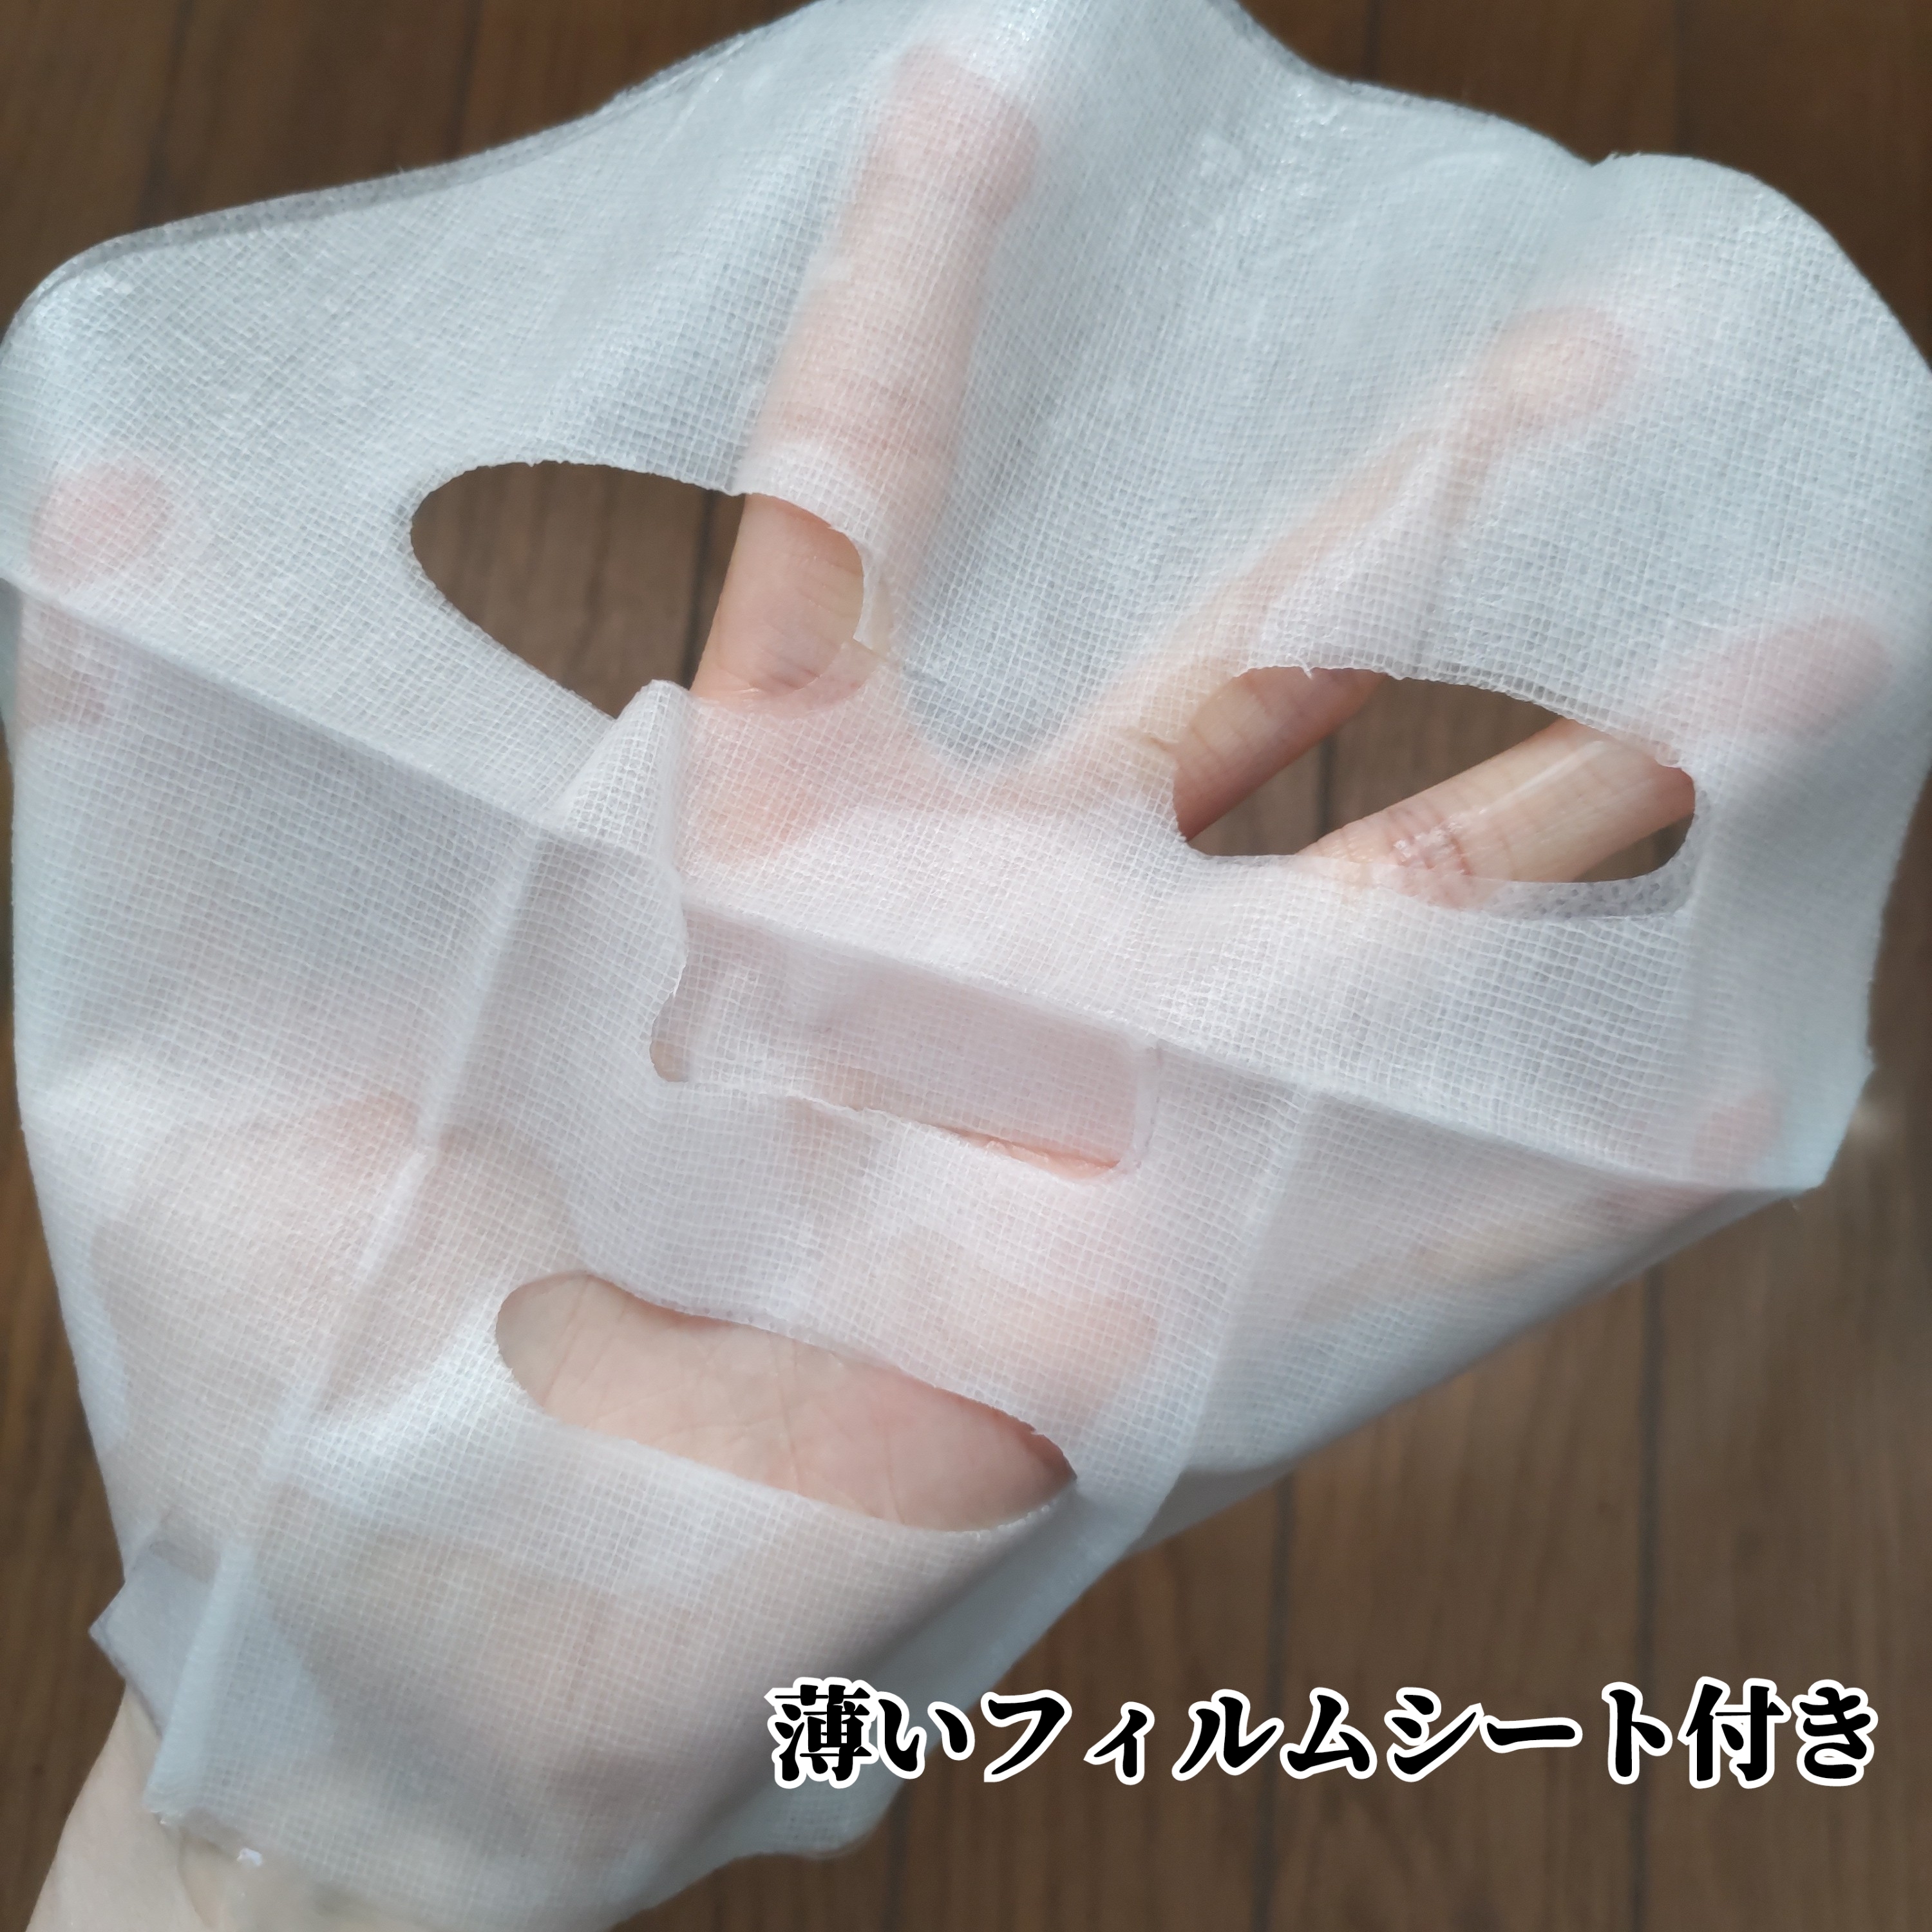 VT Cosmetics シカマスクシートを使ったYuKaRi♡さんのクチコミ画像4